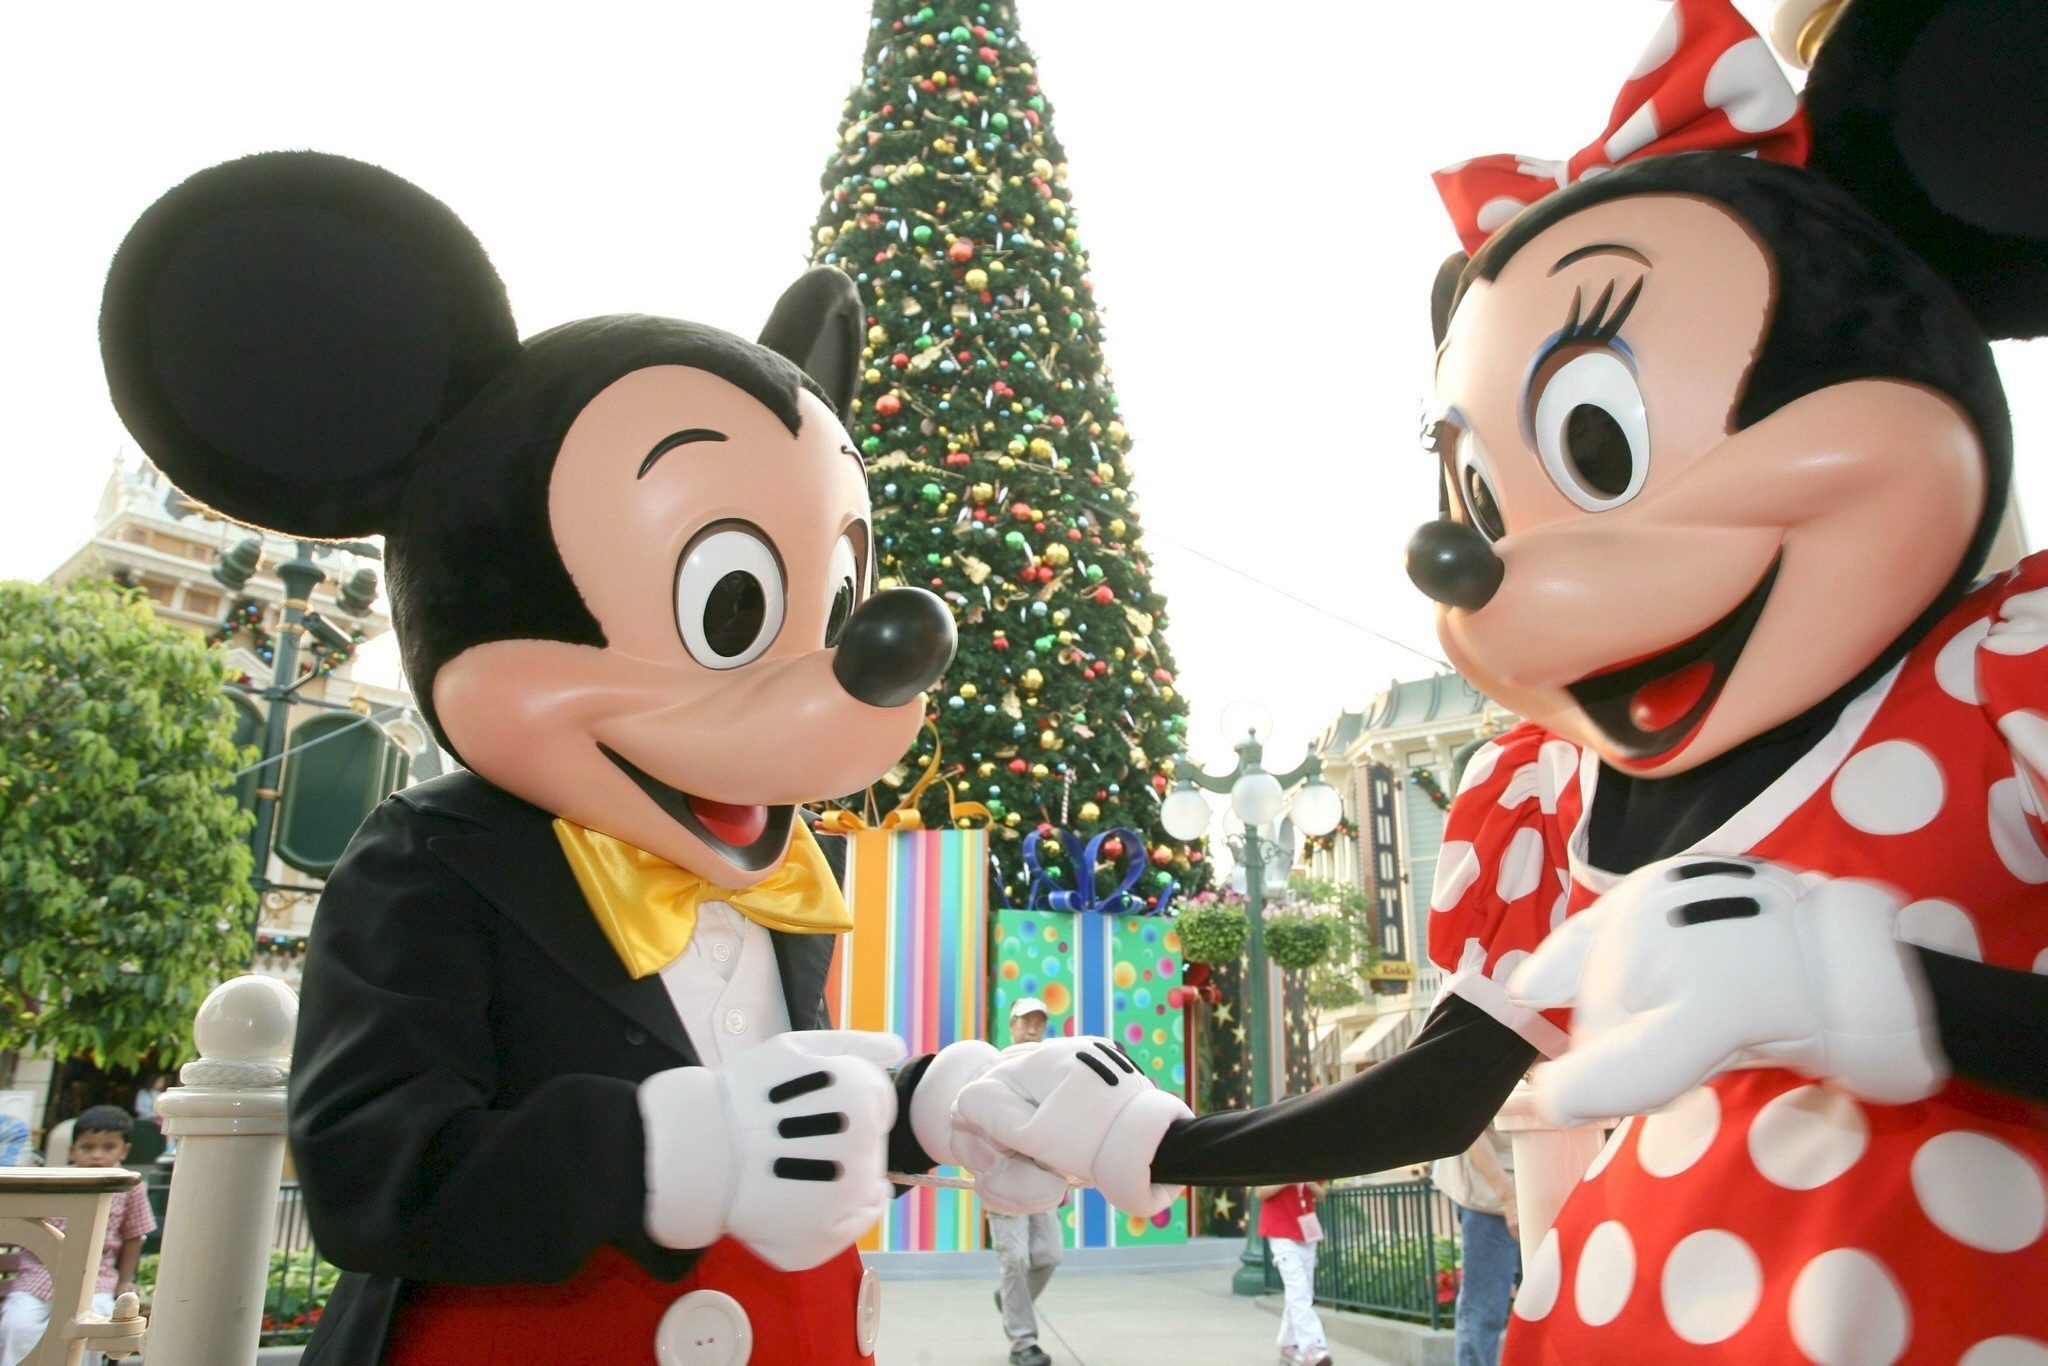 Mickey y Minnie Mouse junto a un árbol de Navidad en el parque de Disney, Disneylandia, en Hong Kong (China), en una foto de archivo. EFE/YM

